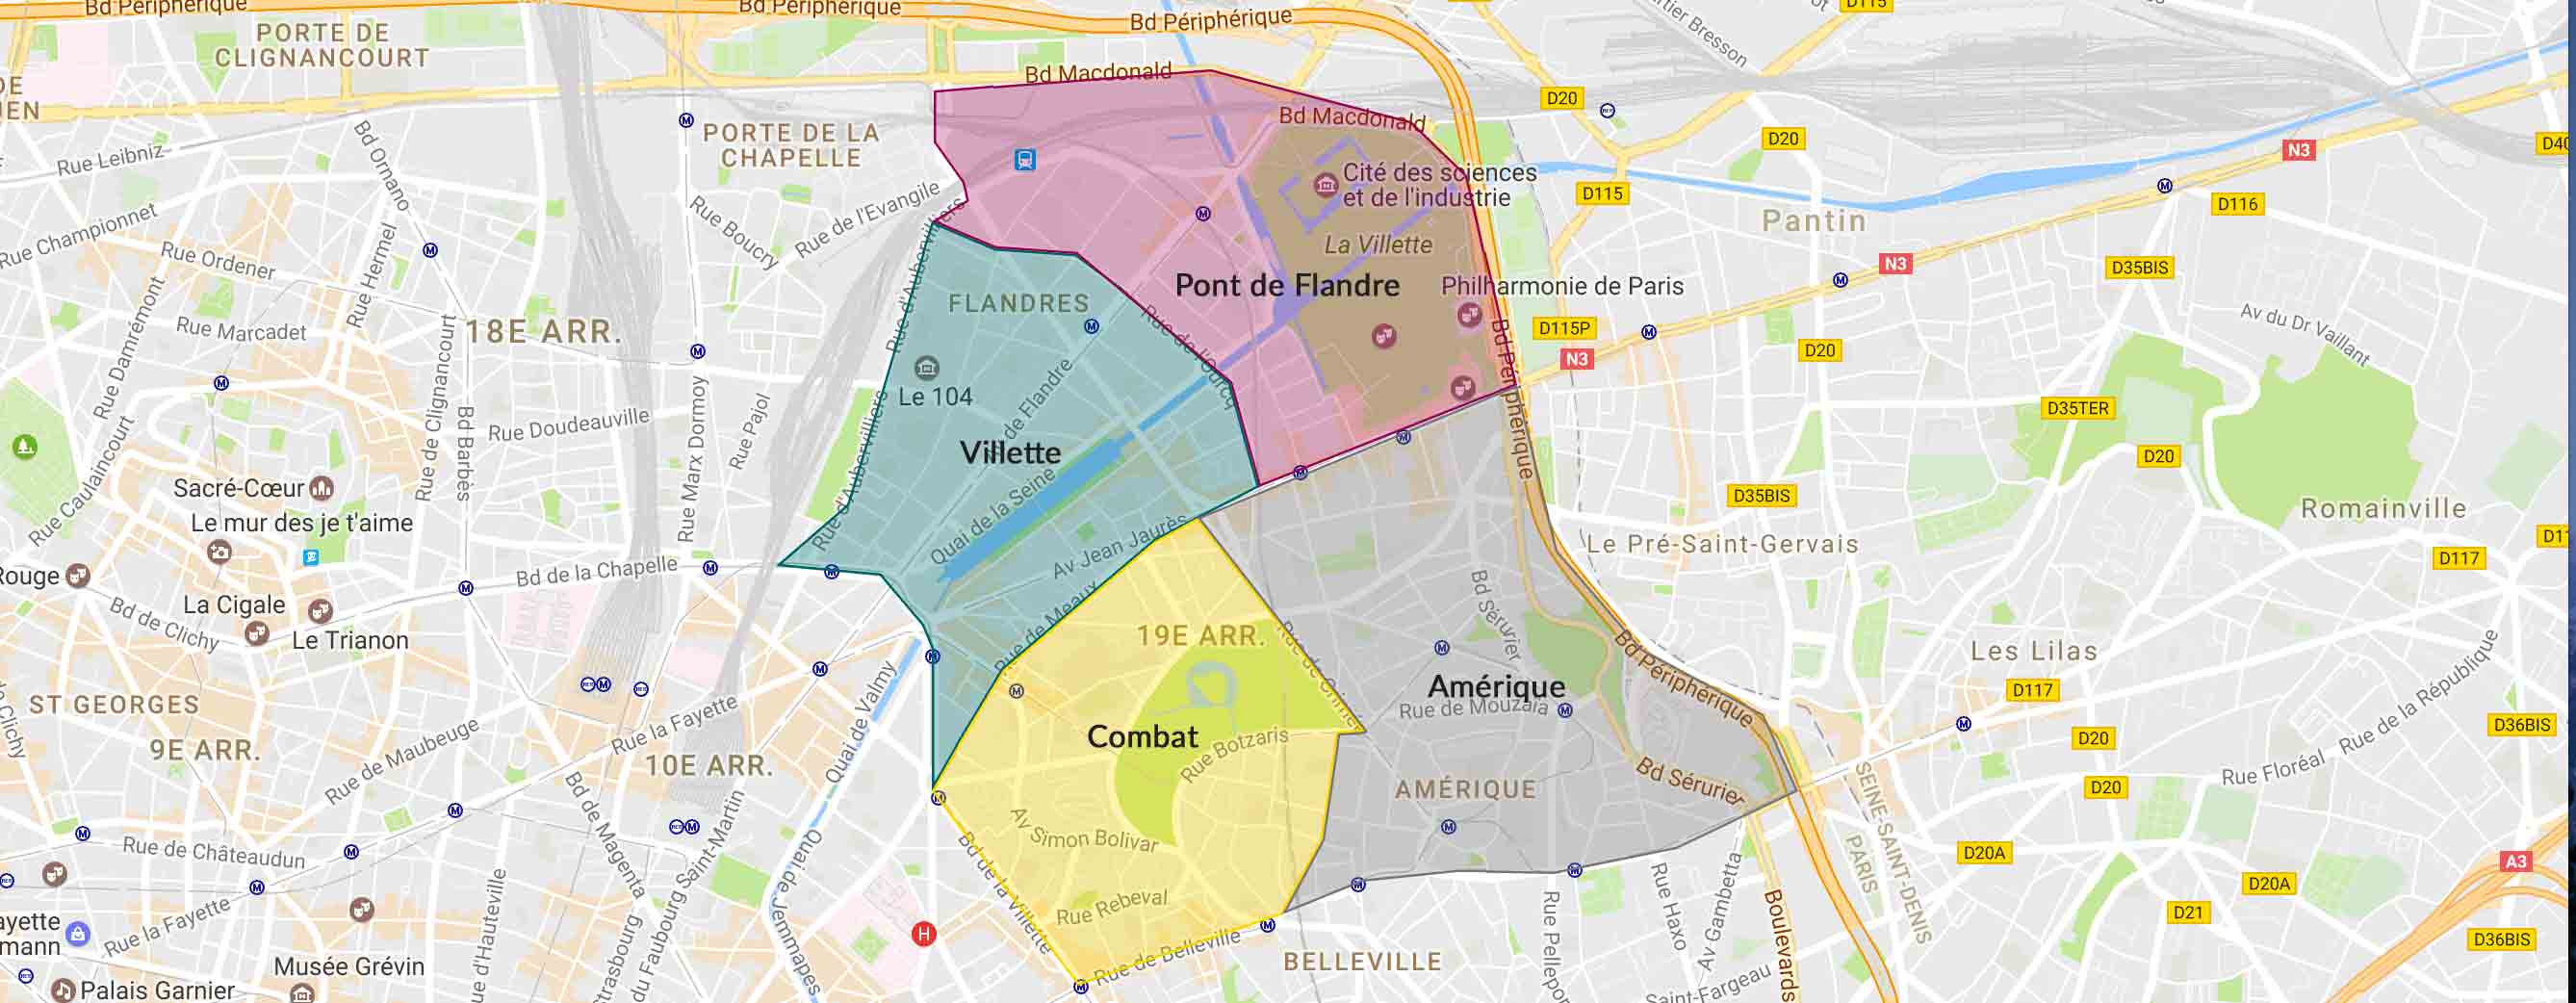 Plan des quartiers du 19e arrondissement Paris